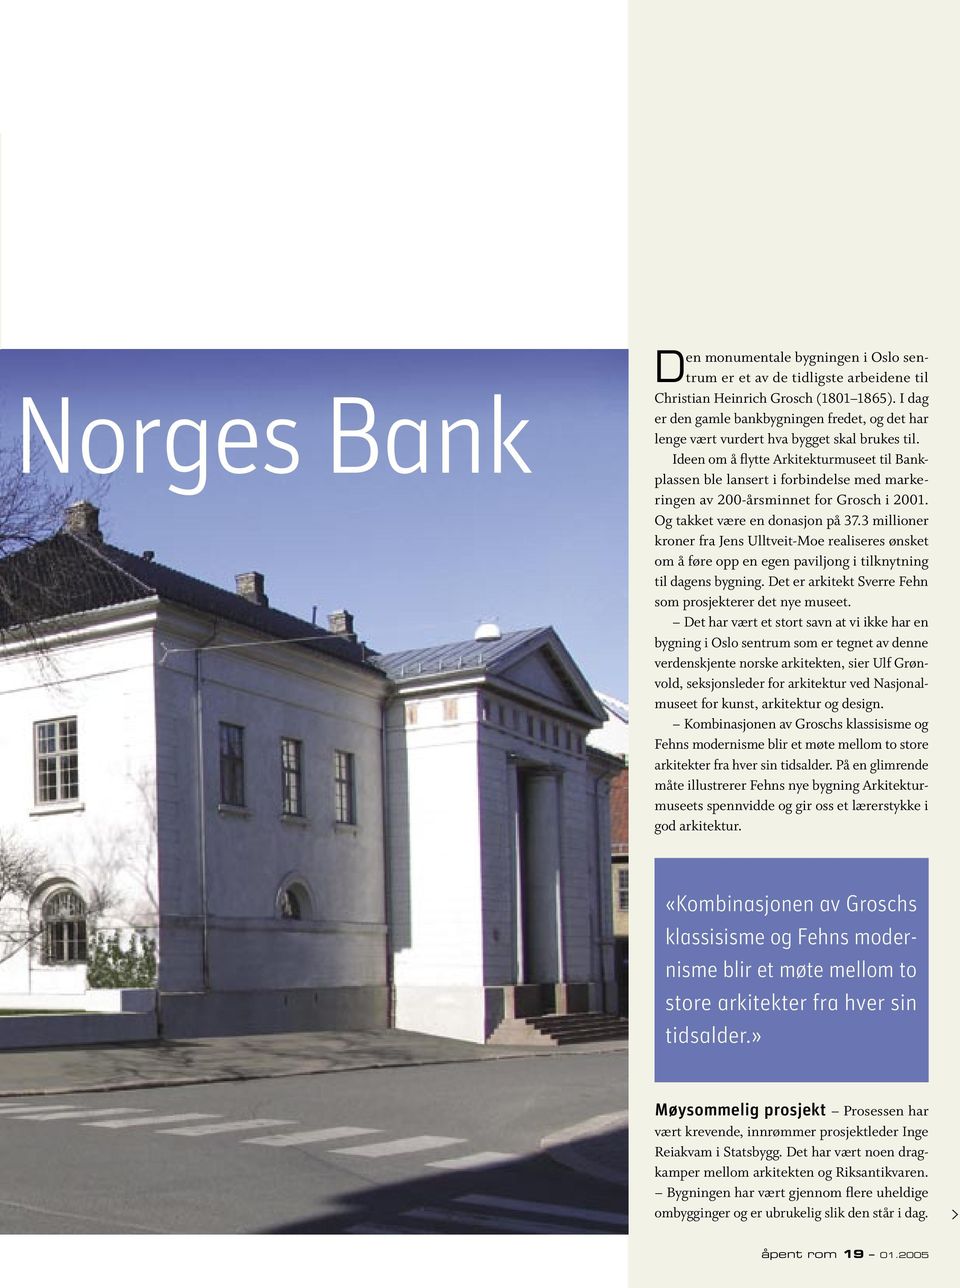 Ideen om å flytte Arkitekturmuseet til Bankplassen ble lansert i forbindelse med markeringen av 200-årsminnet for Grosch i 2001. Og takket være en donasjon på 37.